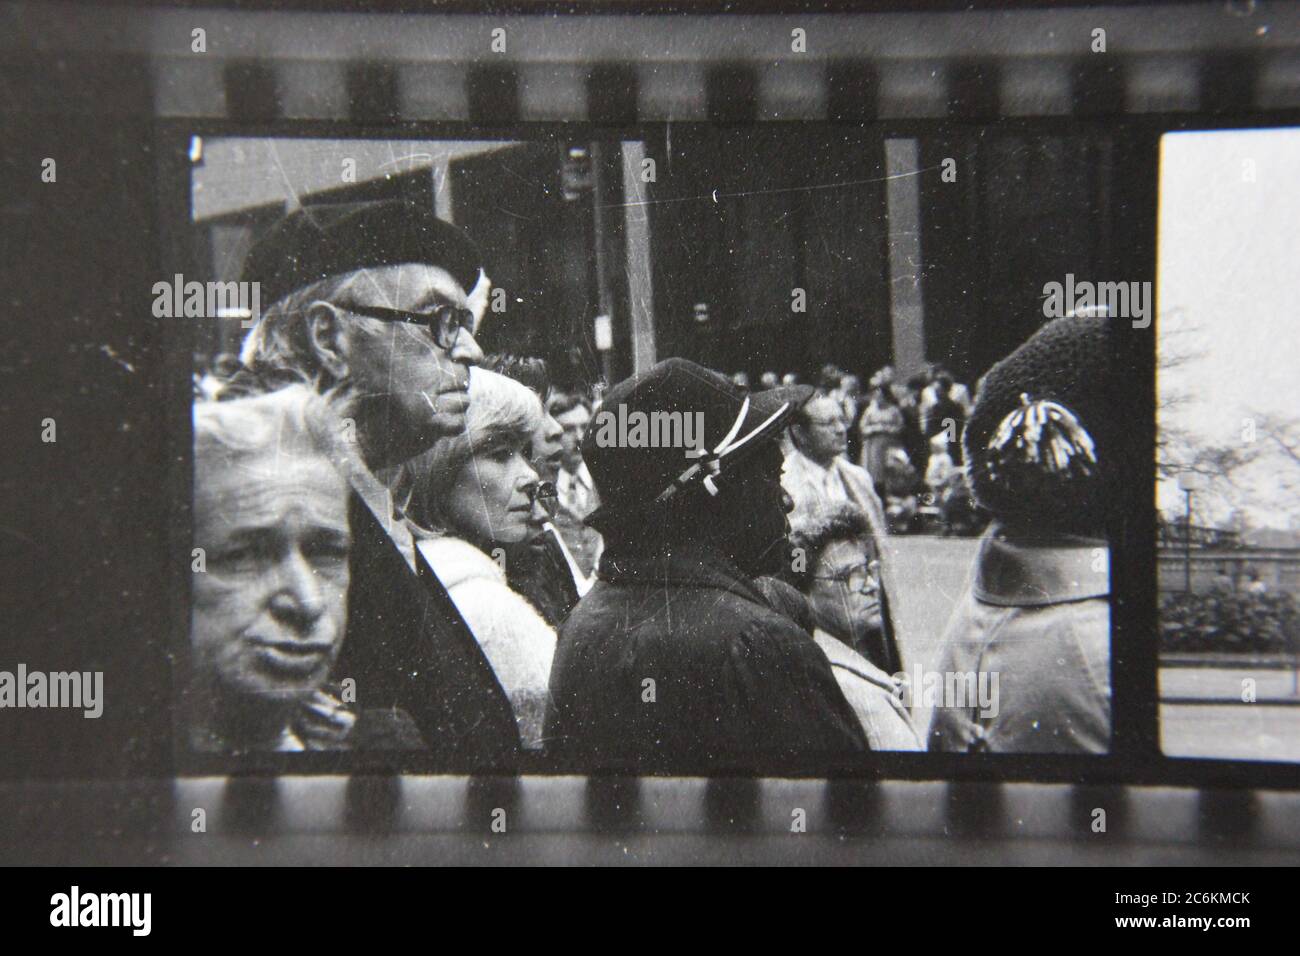 Fin 70s vintage contact imprimé noir et blanc photographie de la foule en attente d'un défilé à Chicago. Banque D'Images